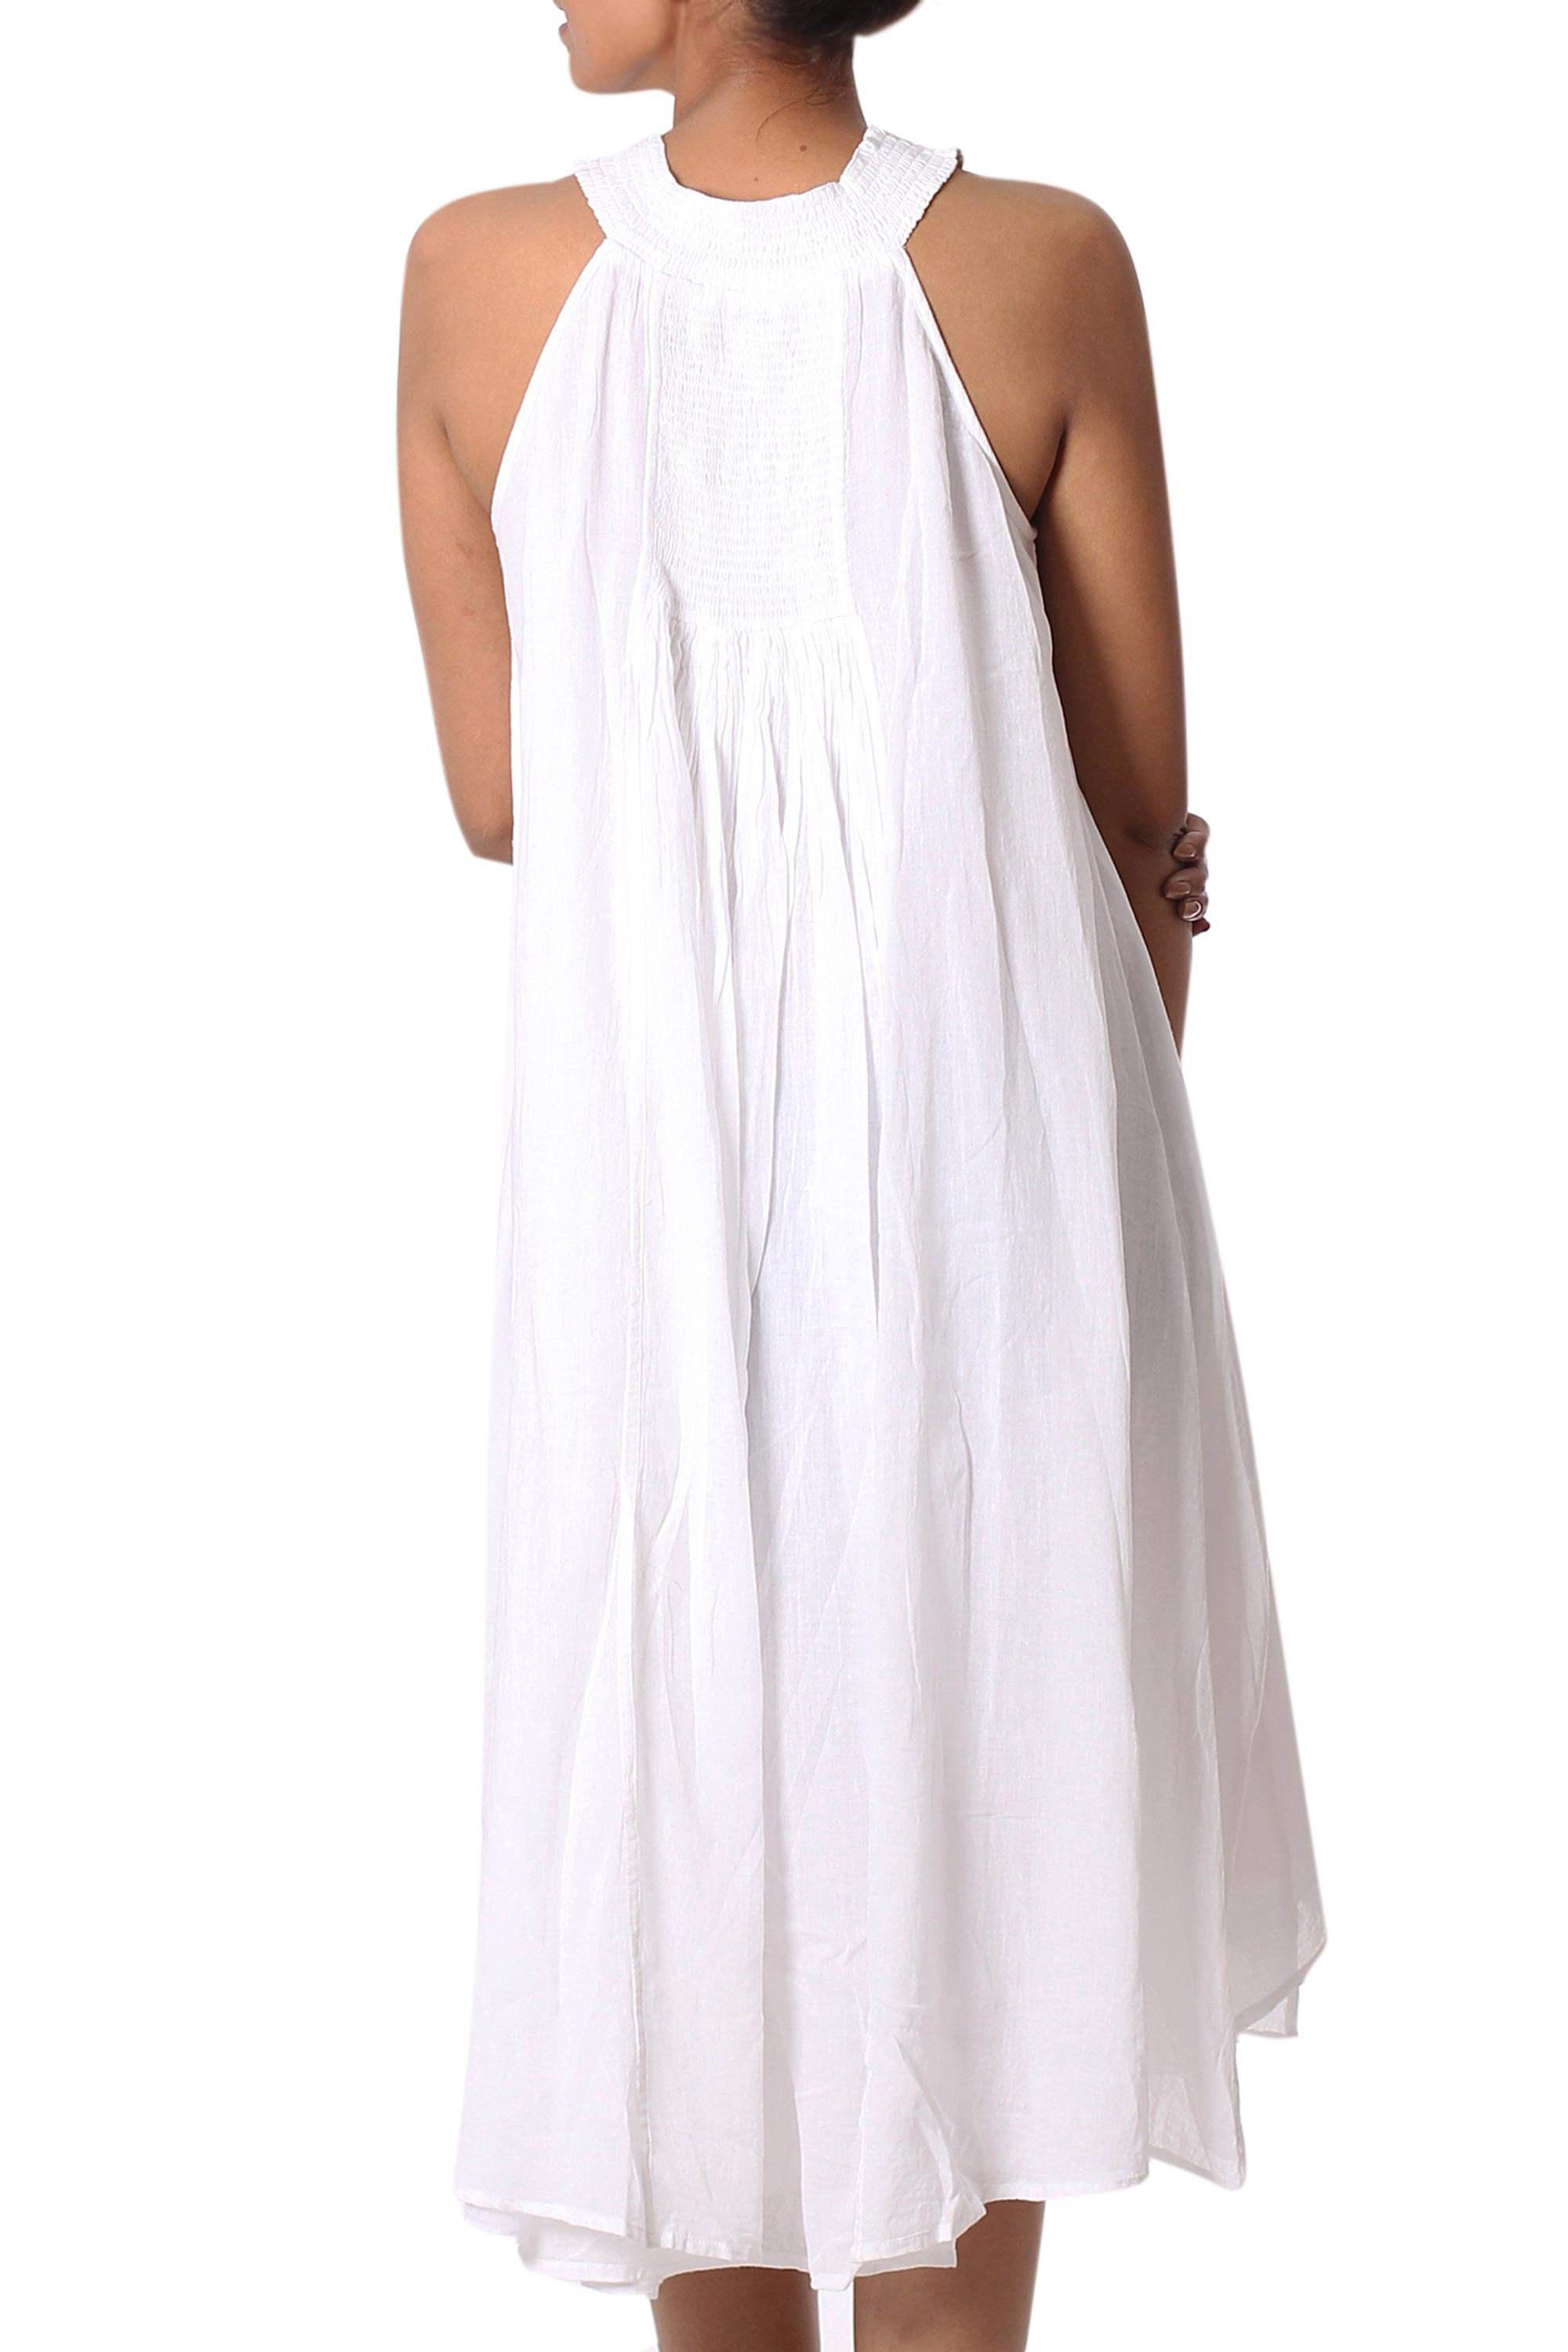 UNICEF Market | Indian Smocked White Cotton Sundress for Women - Indian ...